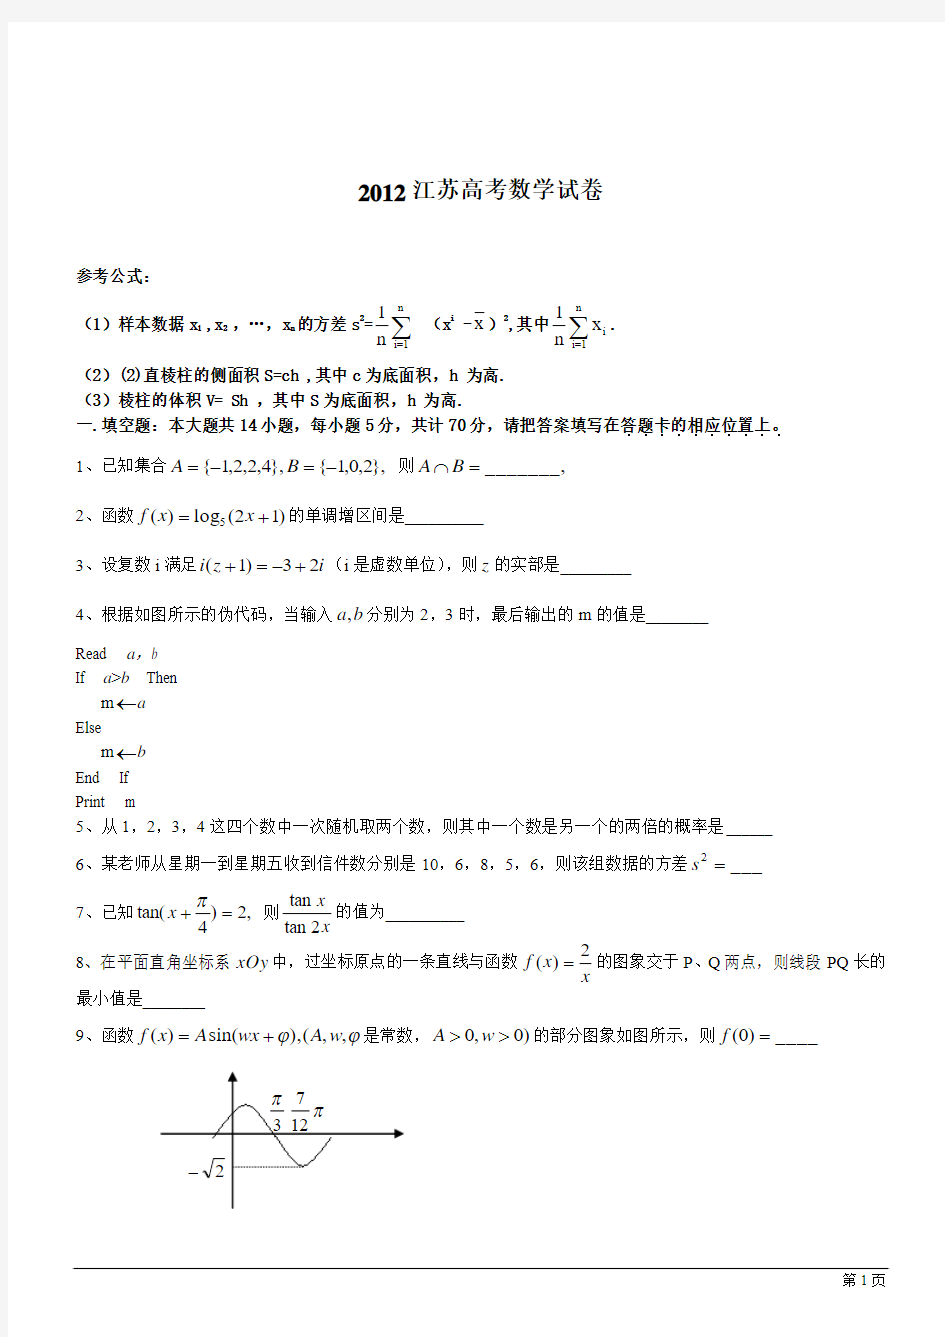 2012年江苏高考数学试题(含附加题及答案)